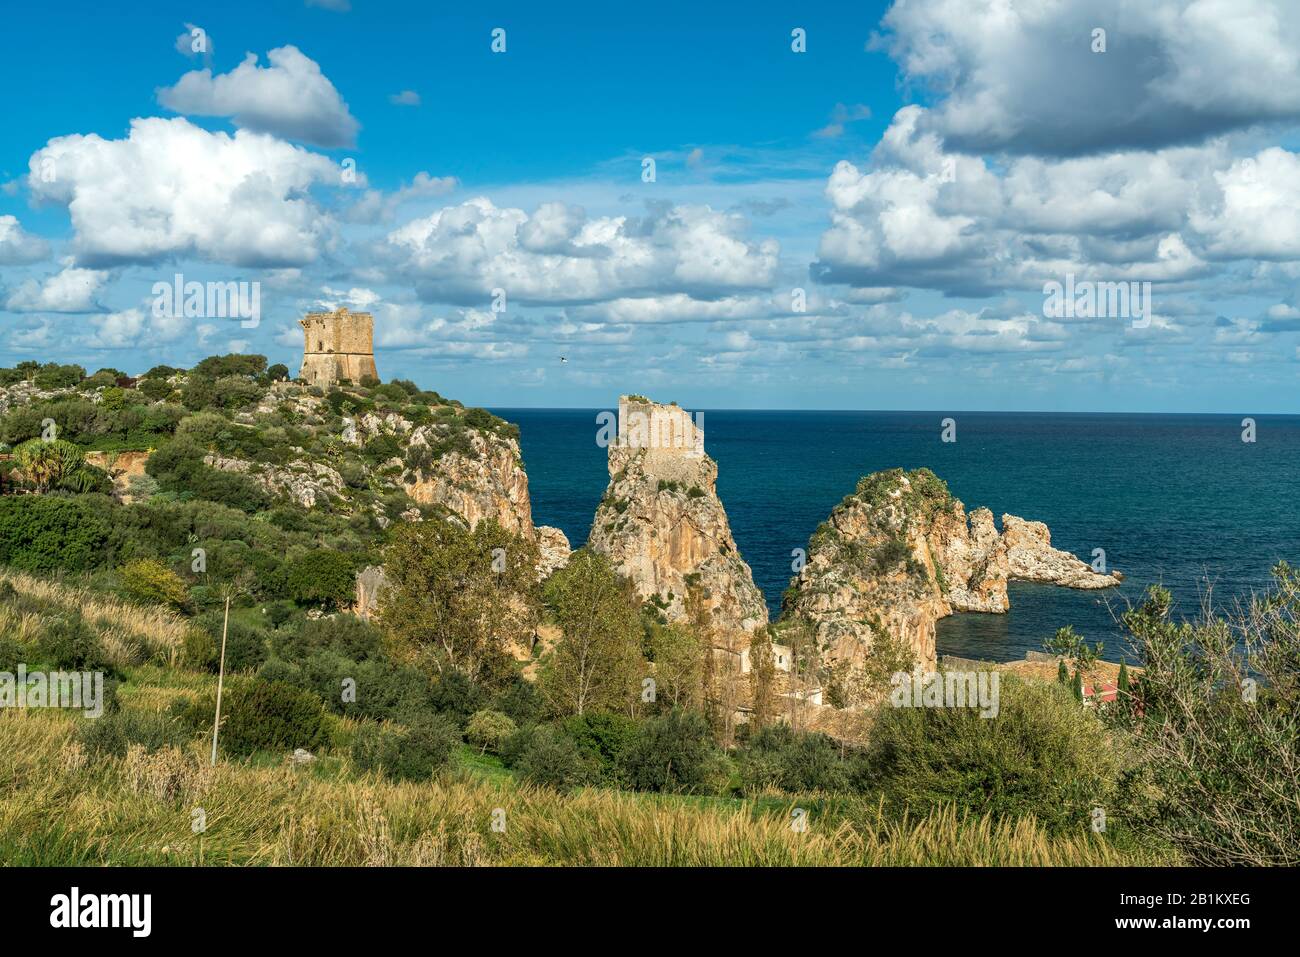 Wachturm auf den Klippen von Scopello, Sizilien, Italien, Europa  |  watch tower on the cliffs of  Scopello, Sicily, Italy, Europe Stock Photo